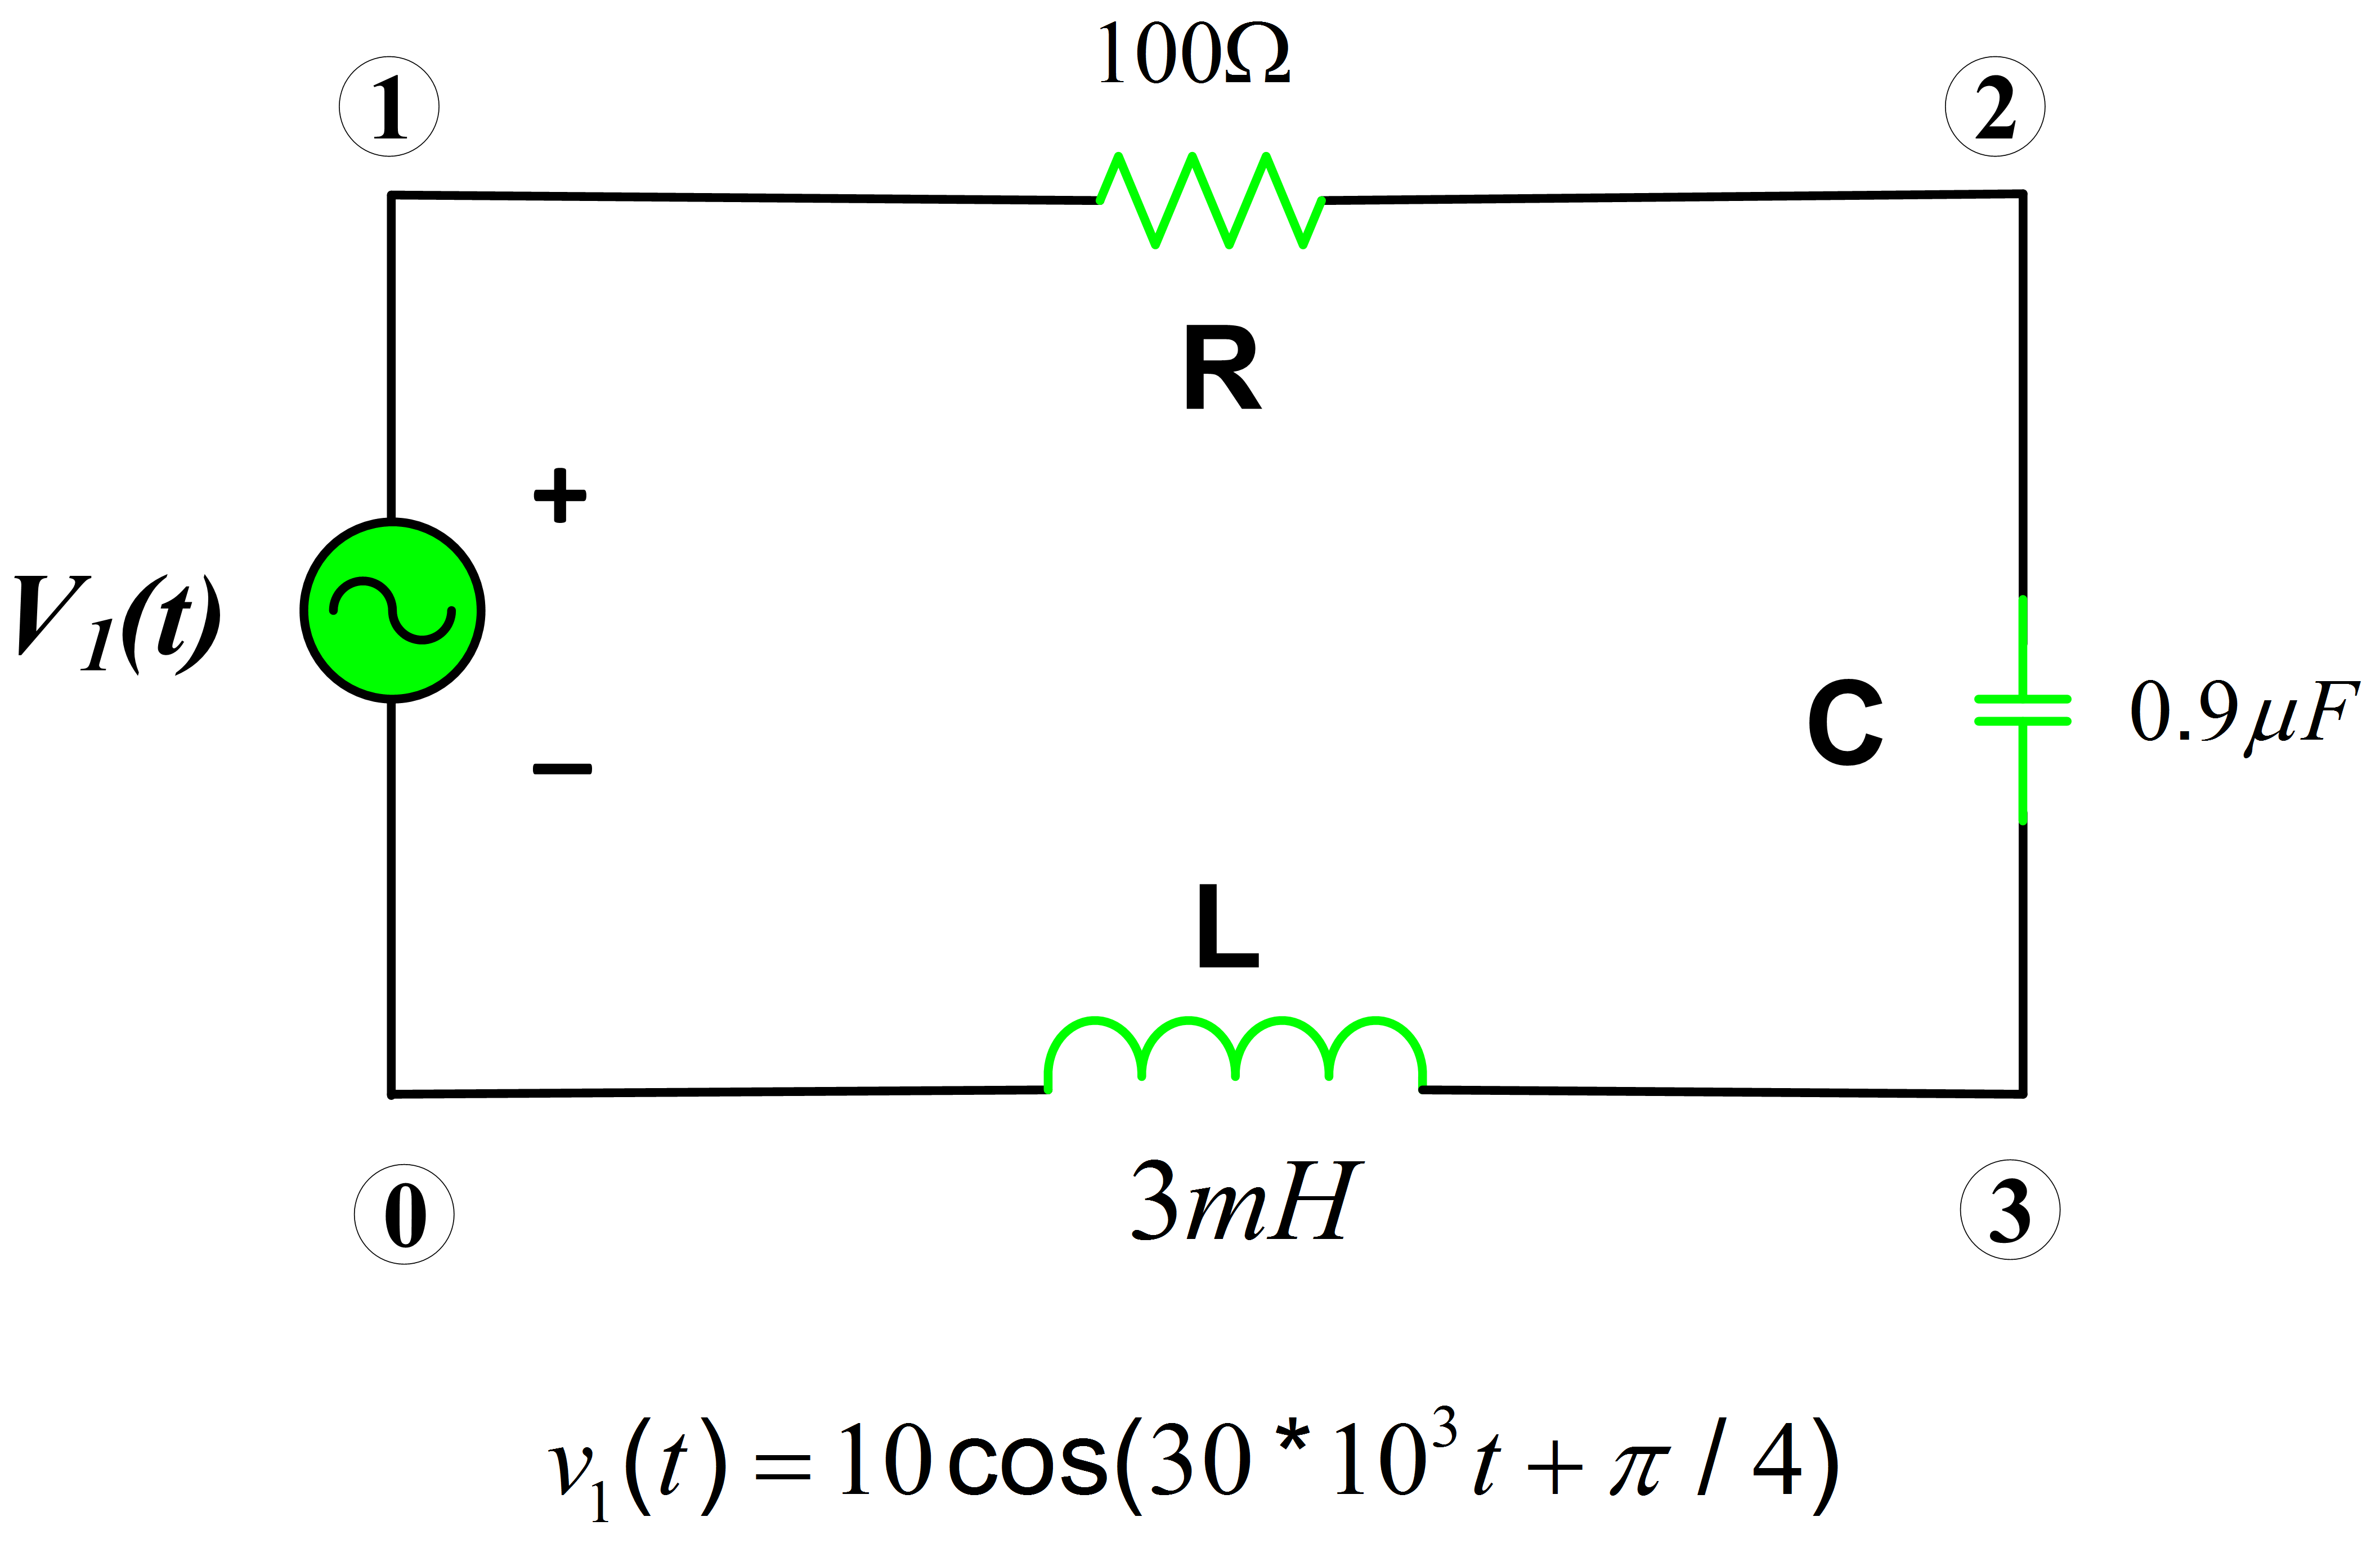 rlc circuit in matlab simulink